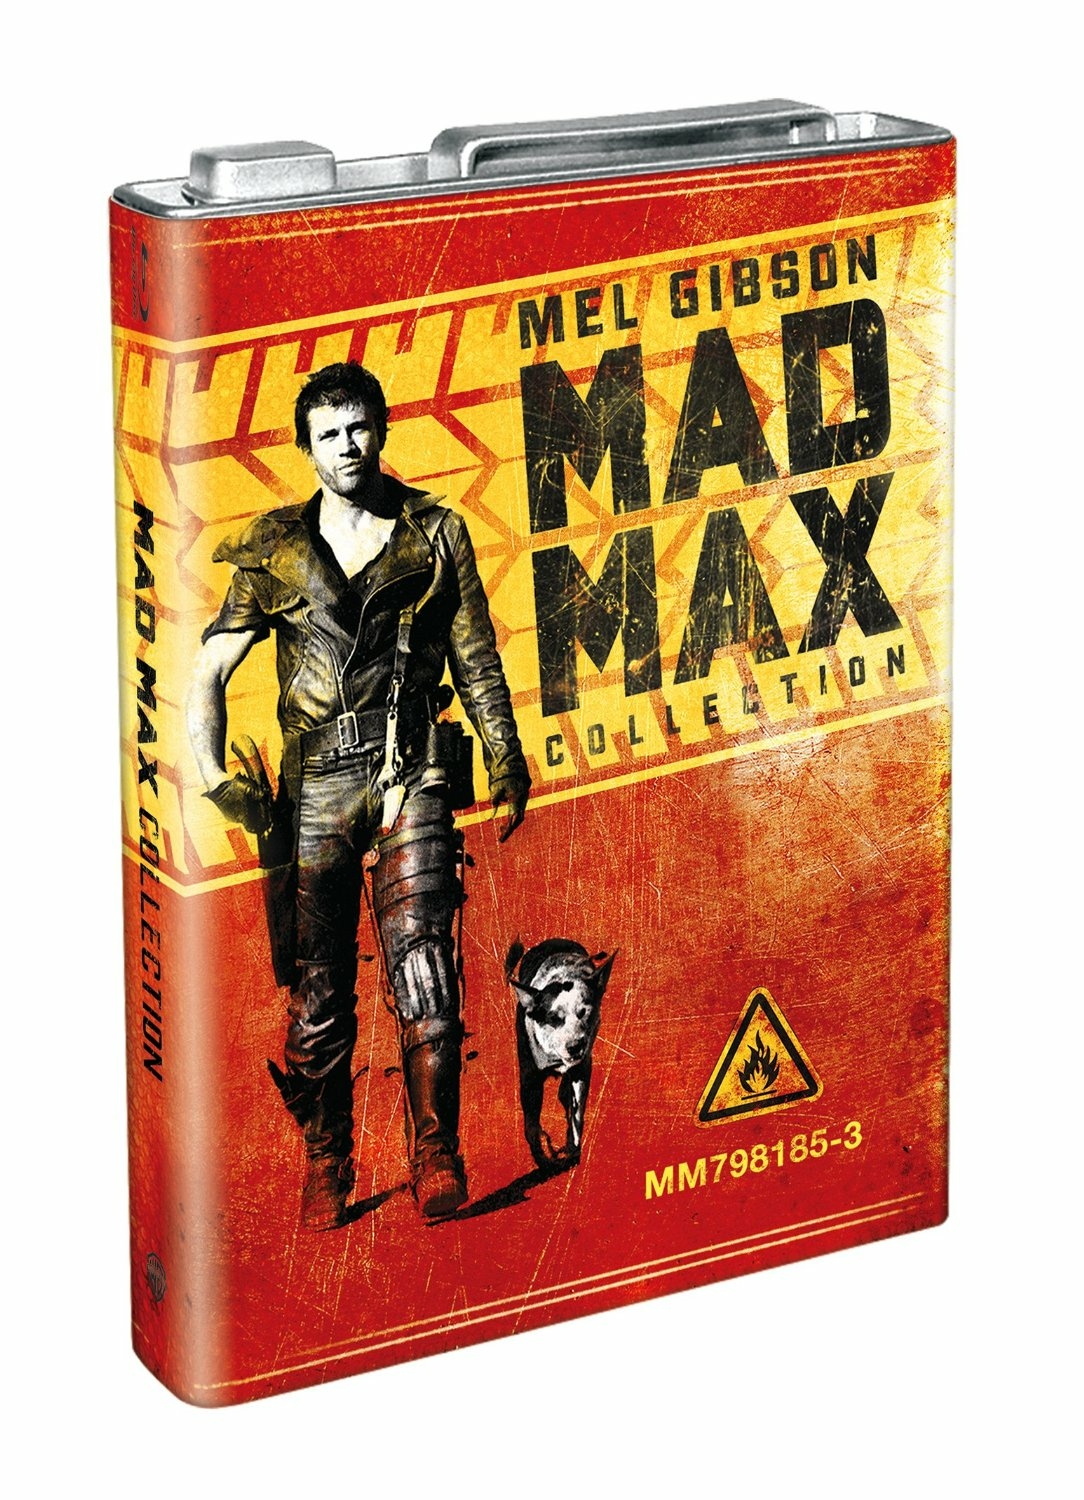 Max collection. Коллекционное издание Mad Max. Безумный Макс Blu-ray. Коллекционка Mad Max. Коллекционные издания по Mad Max.